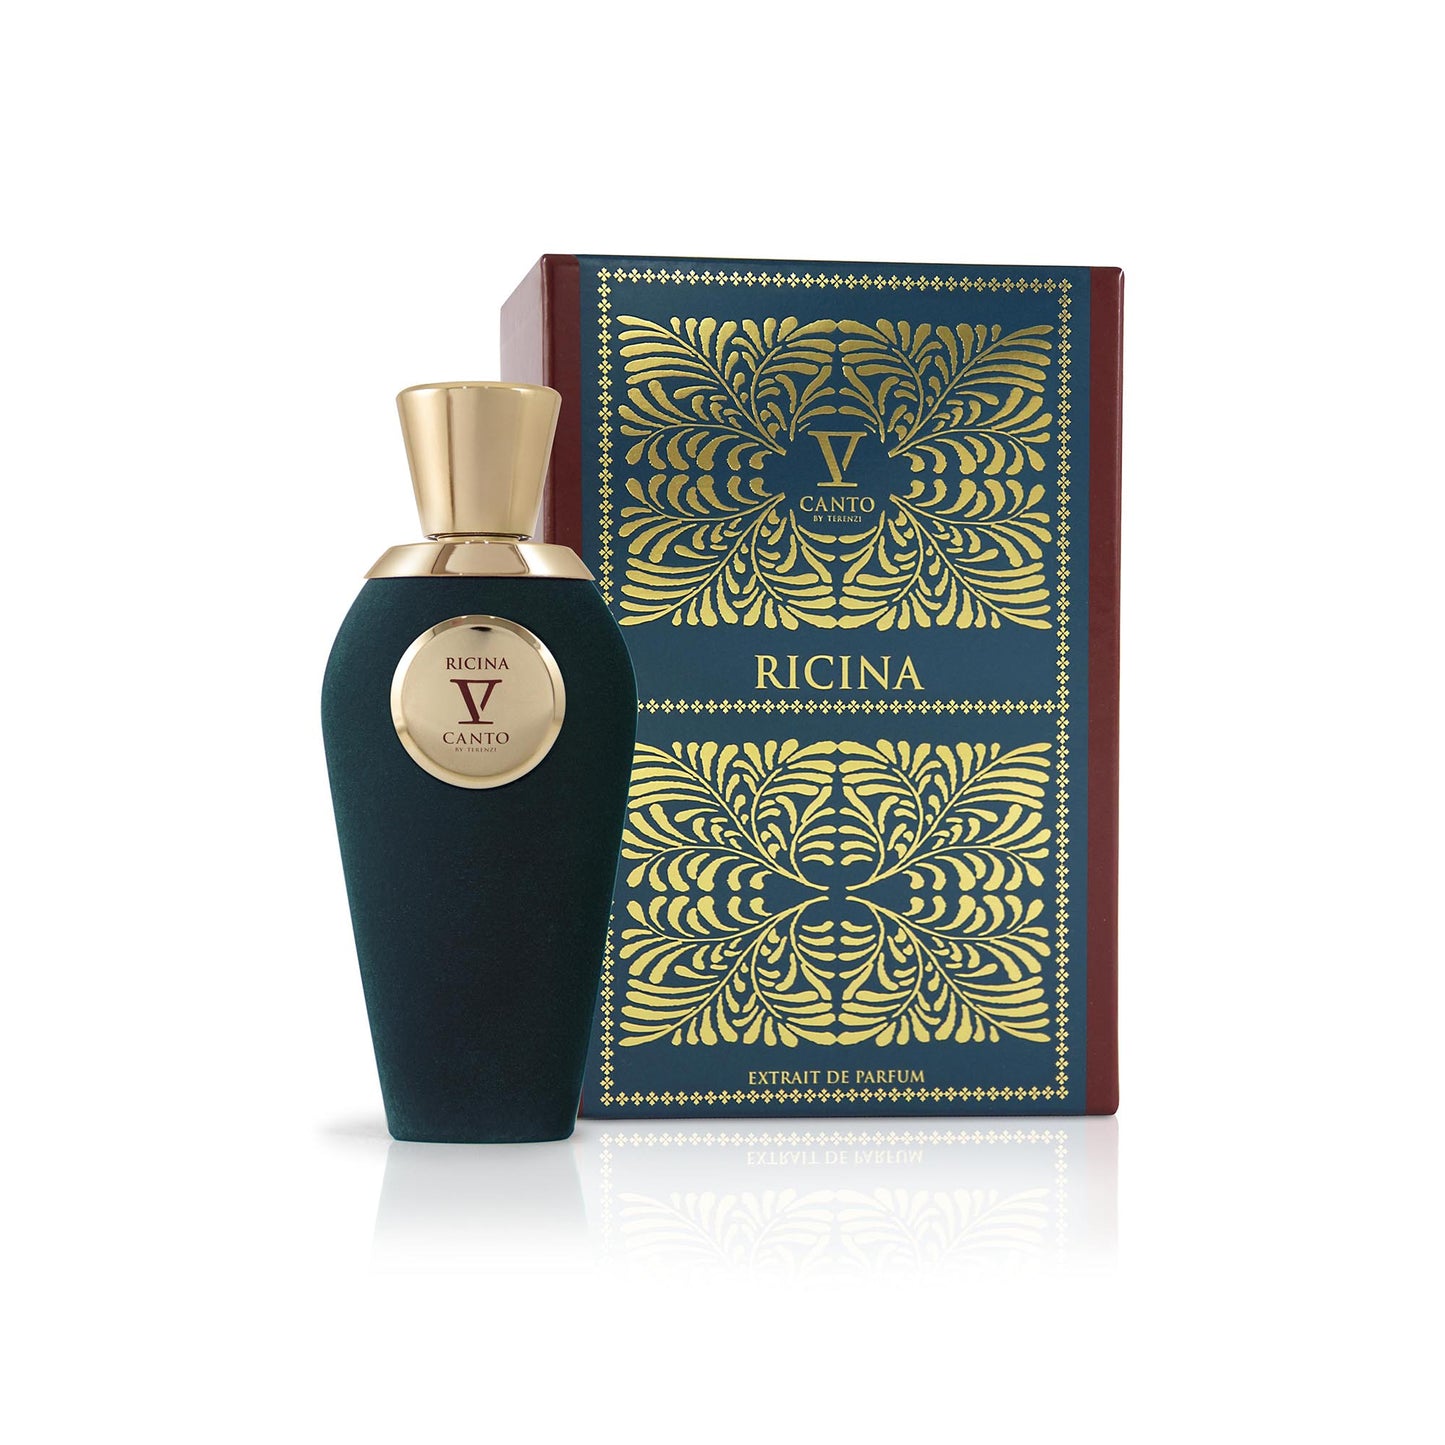 RICINA 1.5ml Sample Vial - Extrait de Parfum